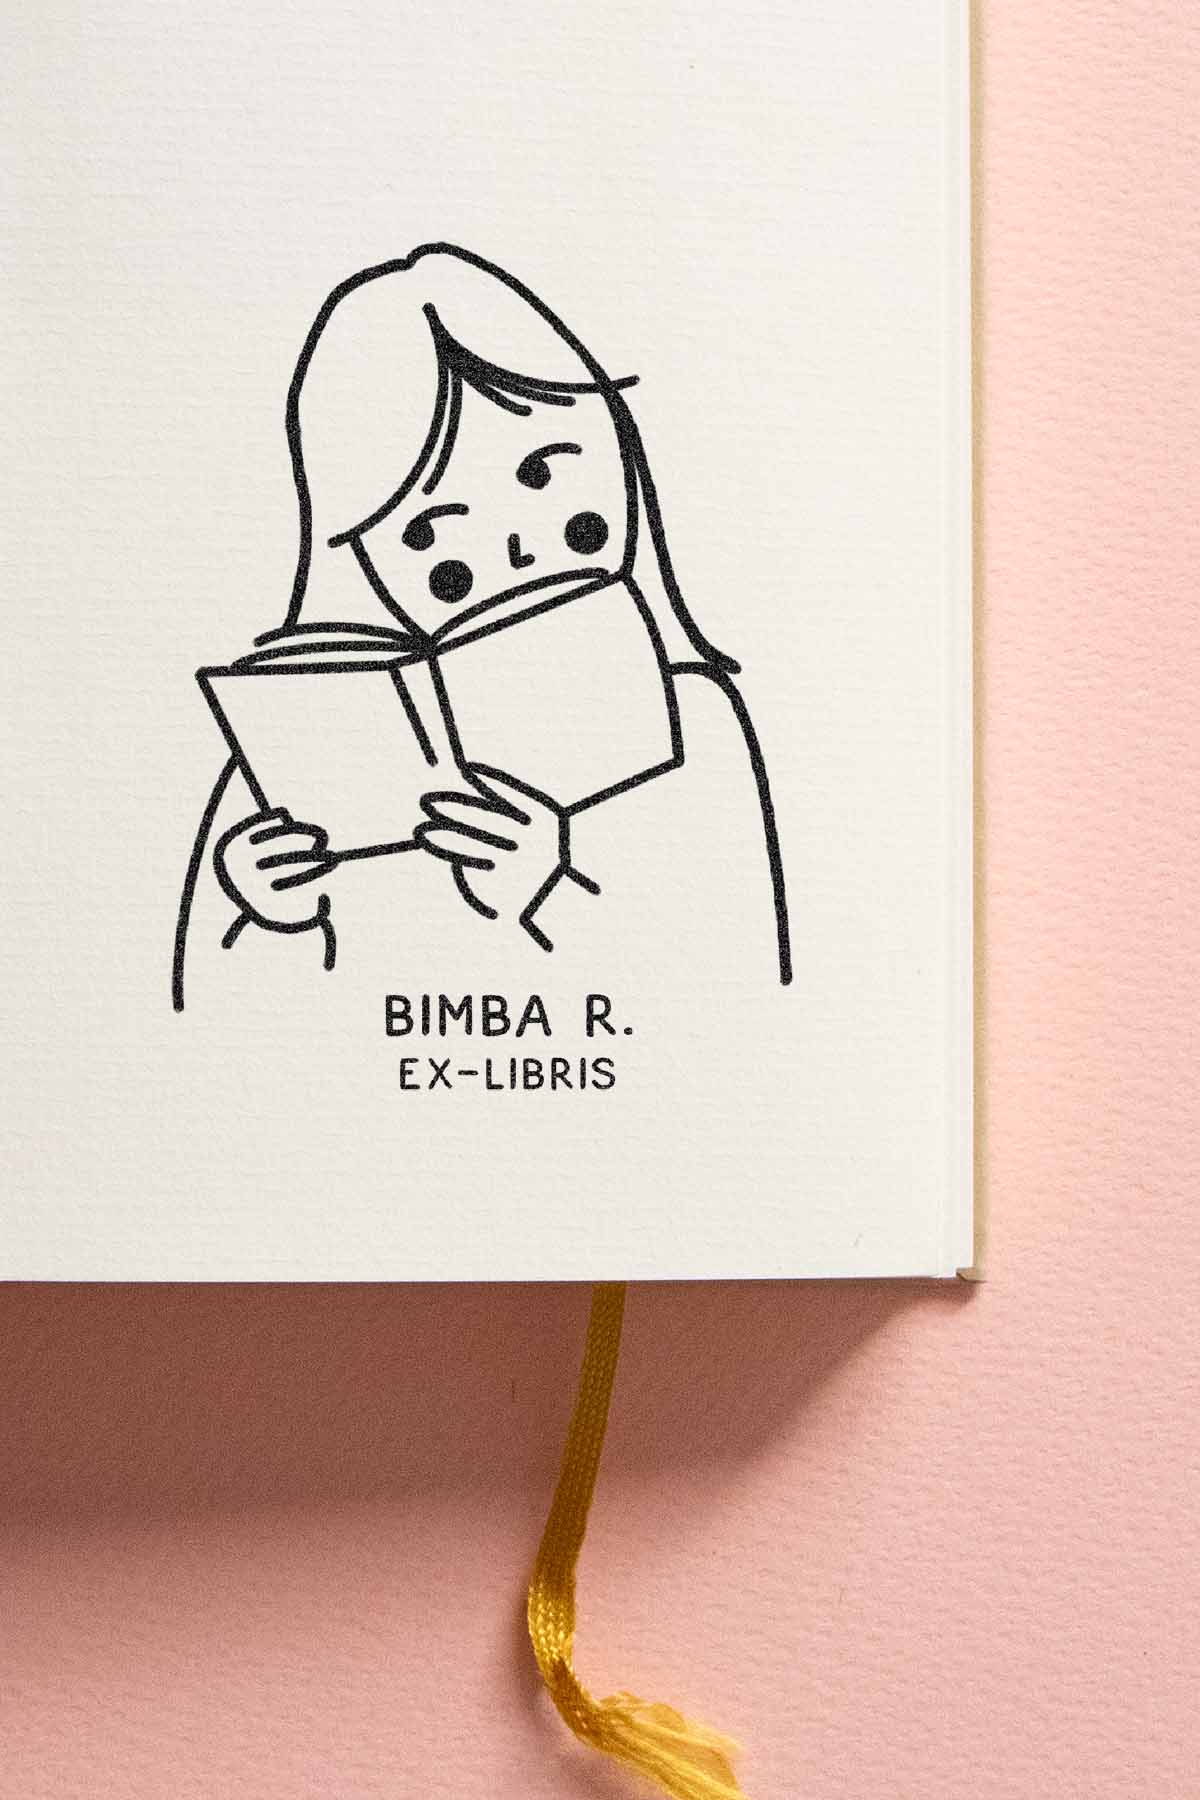 Portadilla de libro estampada con sello exlibris de una niña leyendo